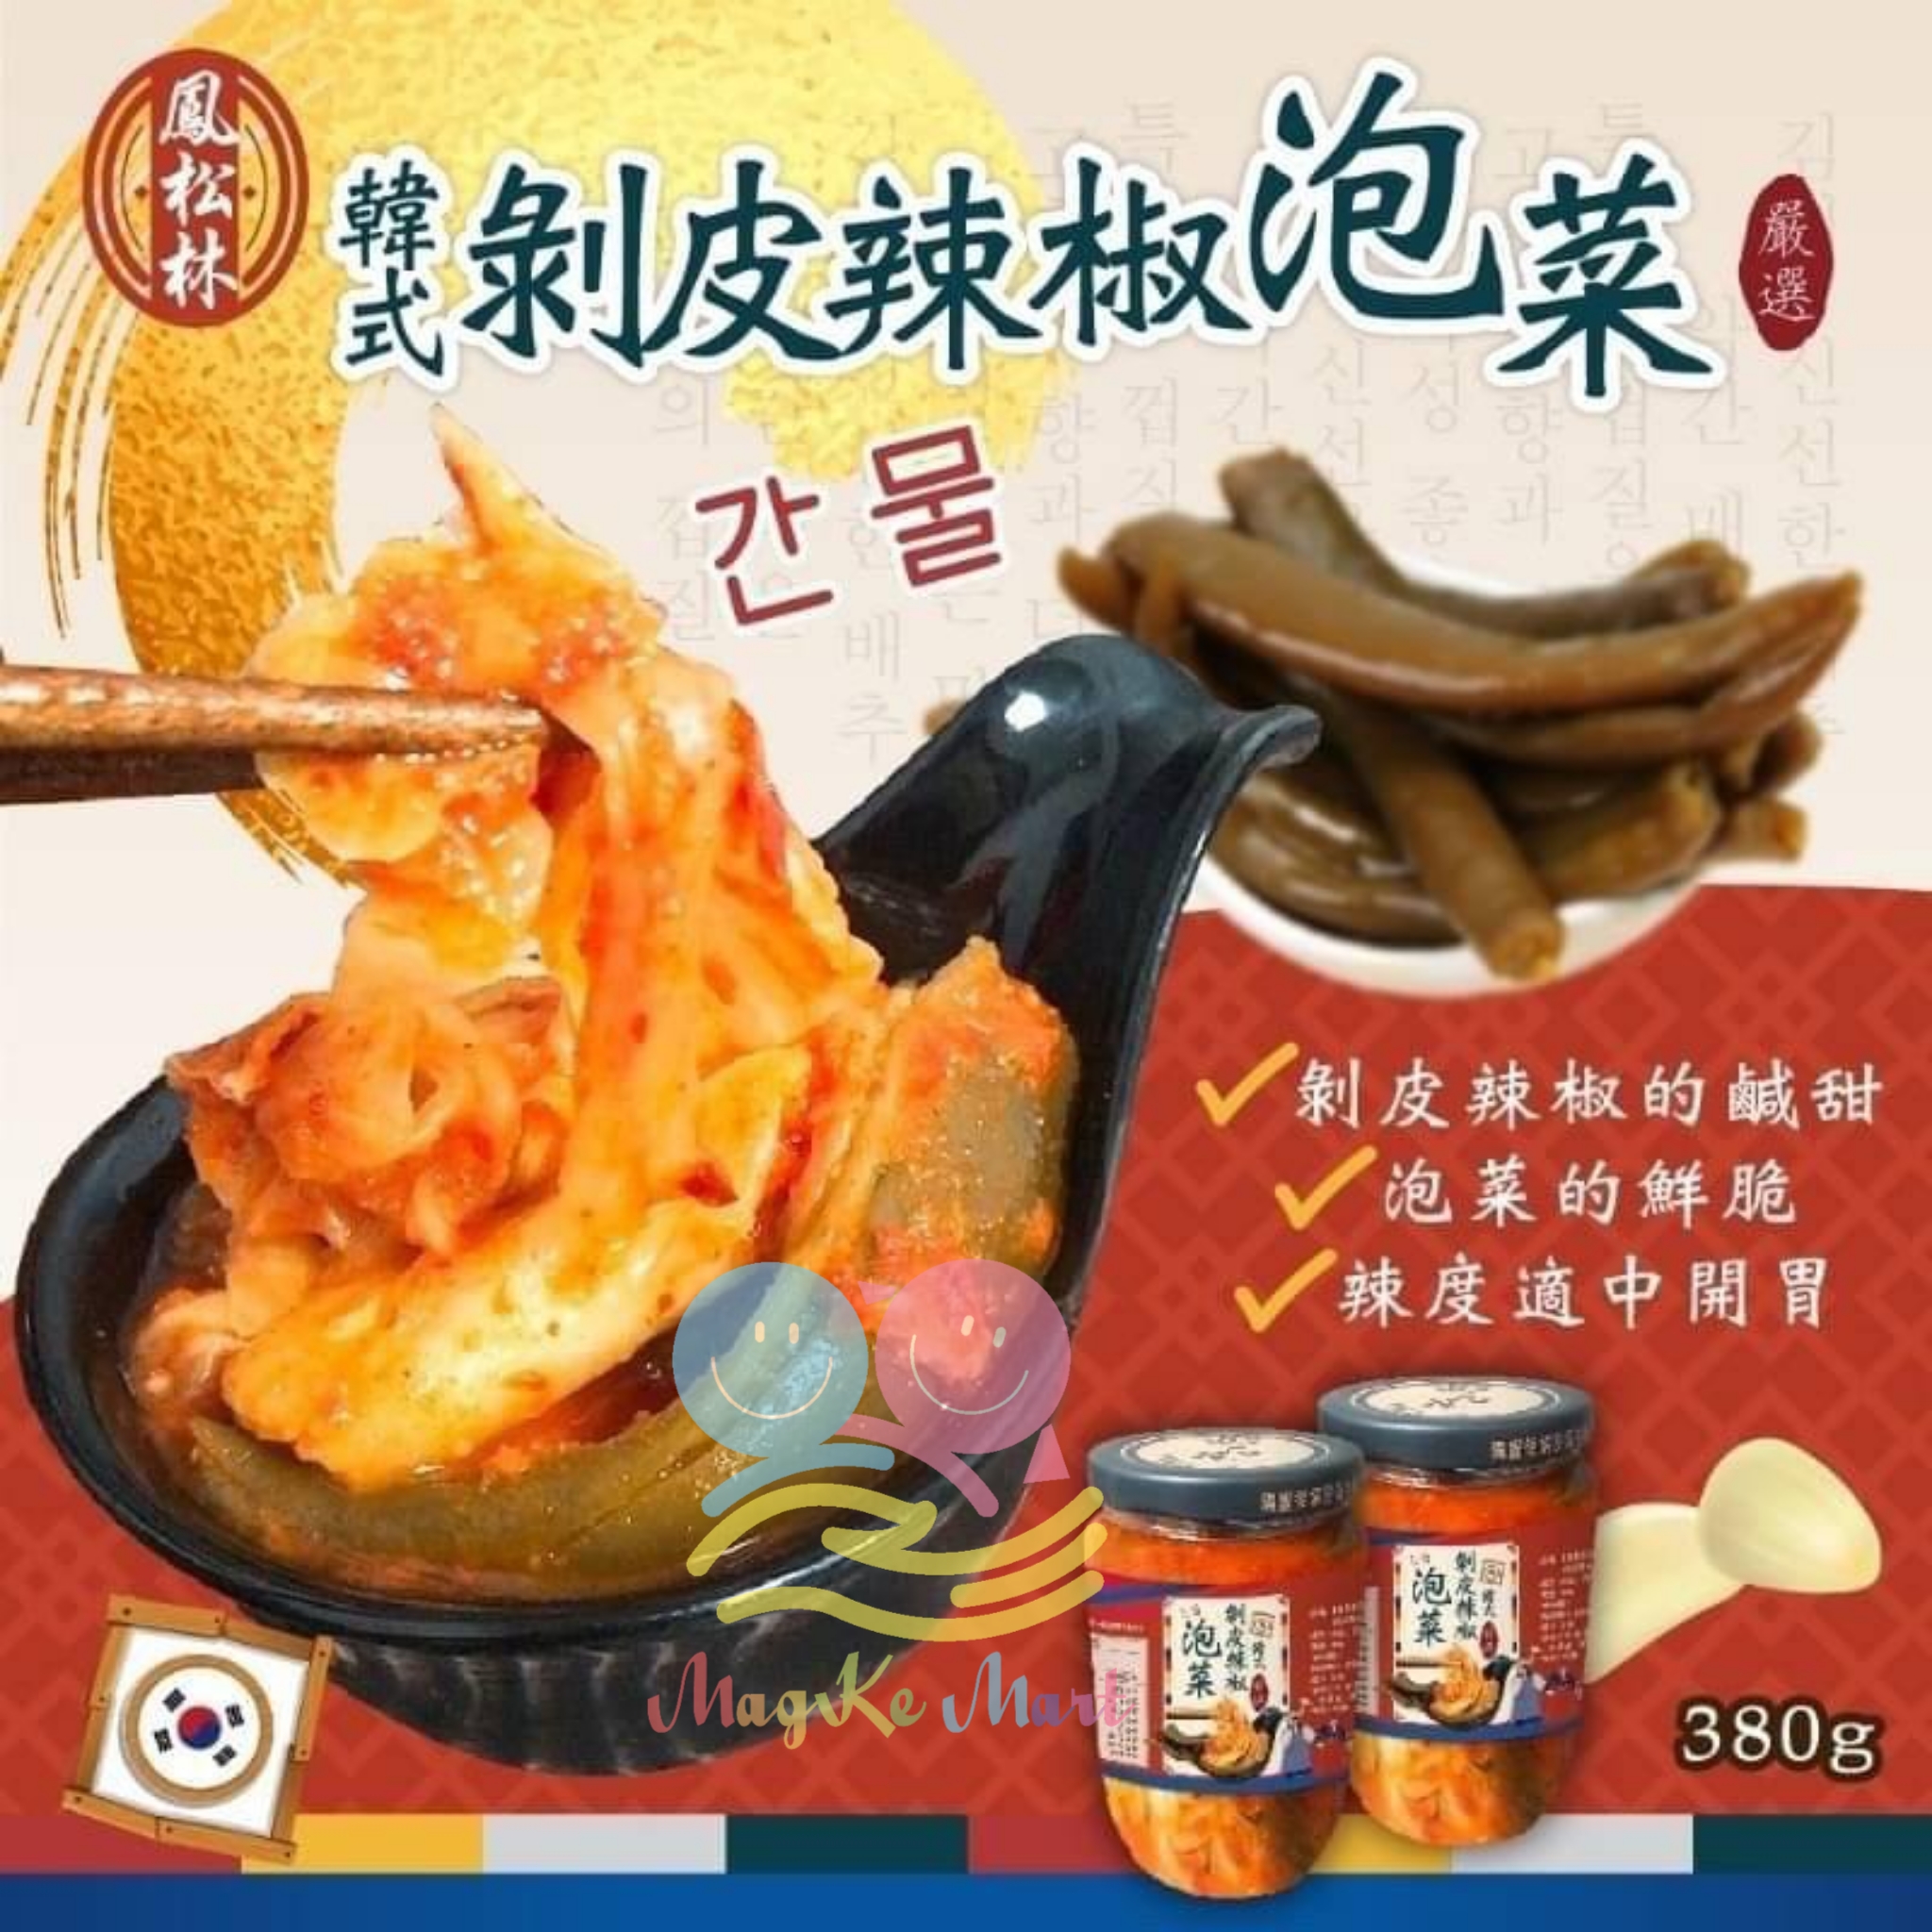 台灣鳳松林韓式剝皮脆辣椒泡菜 380g